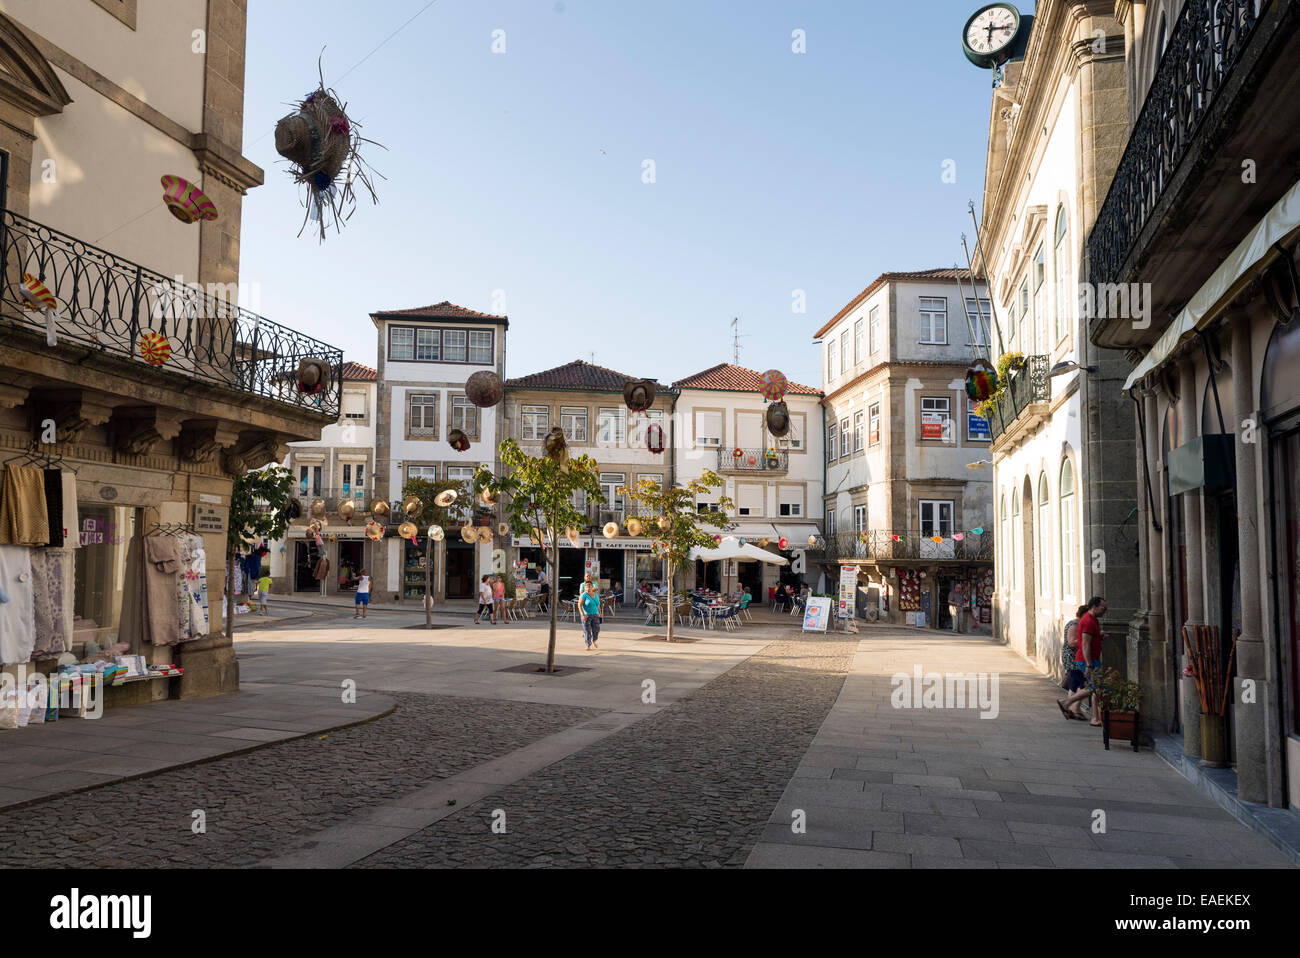 VALENÇA, Portogallo - 2 Settembre 2014: area dello shopping nel centro cittadino. Il portoghese Valença è una città di confine con la Spagna e specializzata Foto Stock